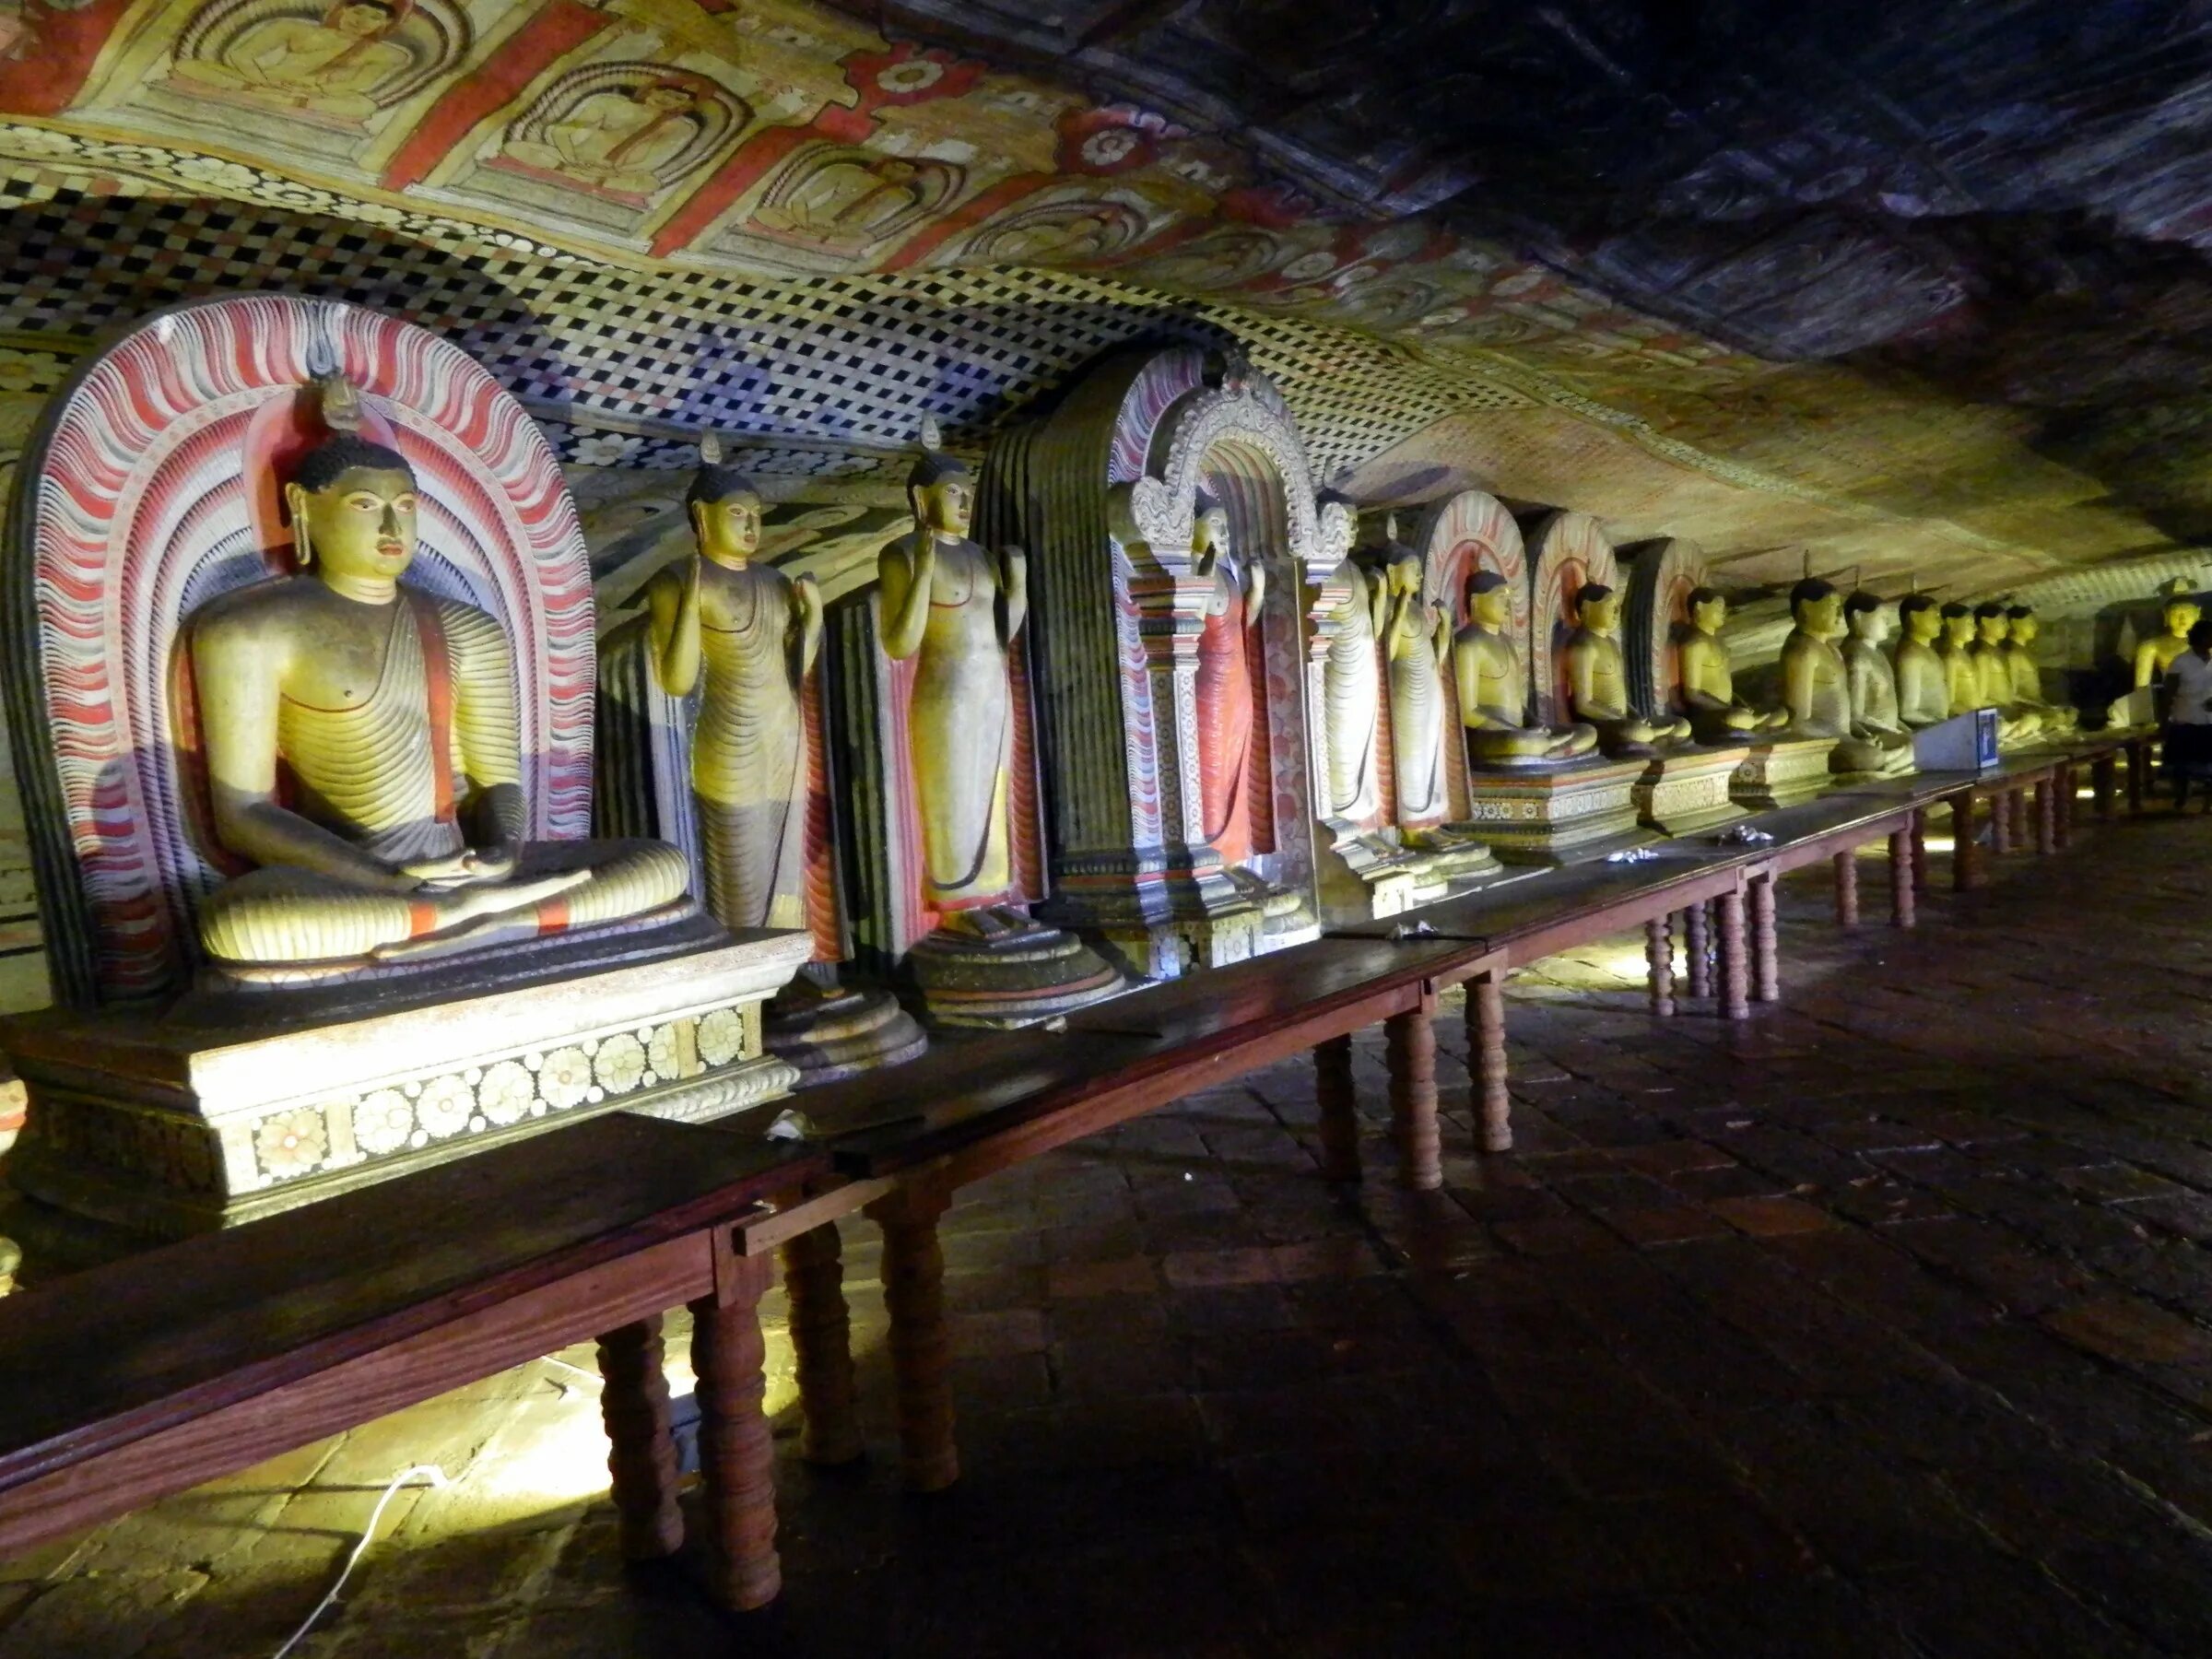 Храм Дамбулла Шри-Ланка. Пещерный храм Дамбулла. Пещерный храм Дамбулла Шри-Ланка. Золотой храм Дамбулла в Шри-Ланке. Дамбулла шри